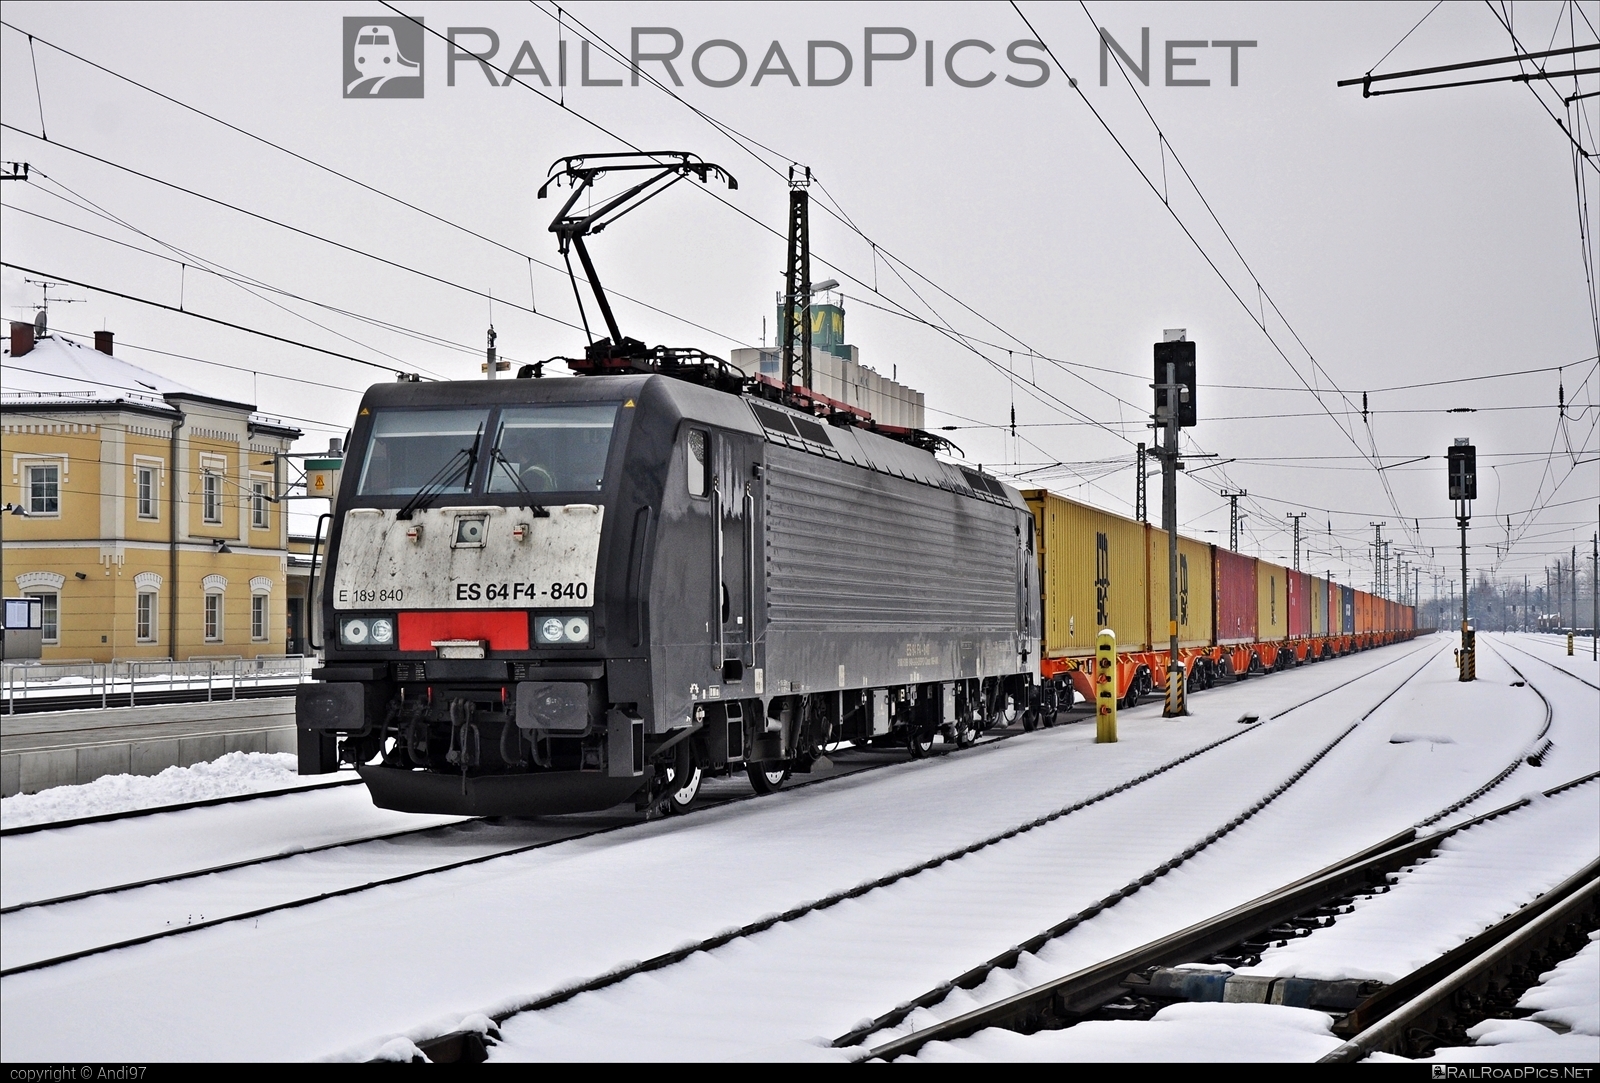 Siemens ES 64 F4 - 189 840 operated by Wiener Lokalbahnen Cargo GmbH #container #dispolok #es64 #es64f4 #eurosprinter #flatwagon #mitsuirailcapitaleurope #mitsuirailcapitaleuropegmbh #mrce #msc #siemens #siemensEs64 #siemensEs64f4 #wienerlokalbahnencargo #wienerlokalbahnencargogmbh #wlc